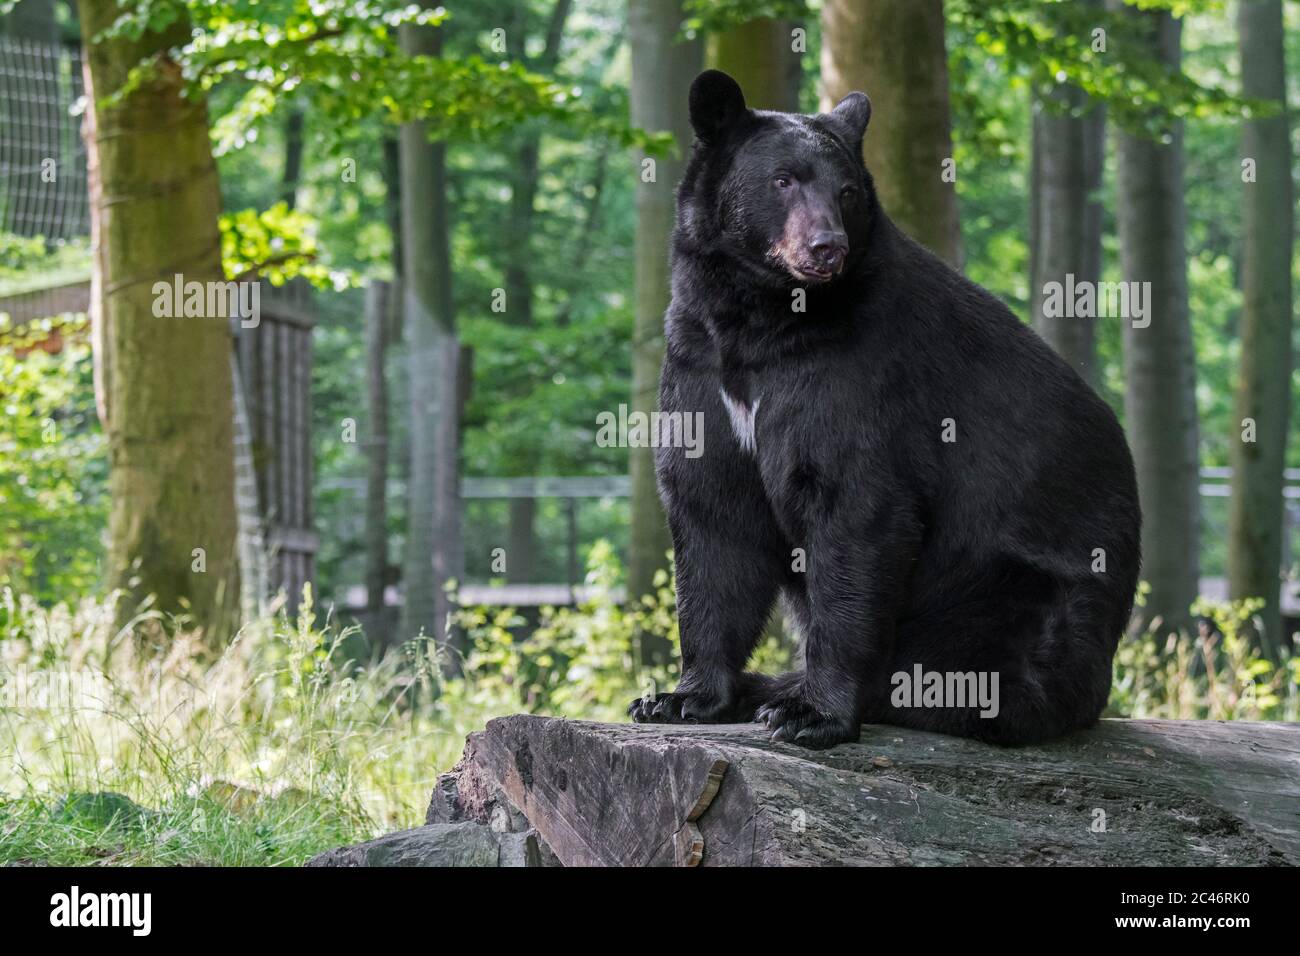 American black bear (Ursus americanus) in the German Zoo Osnabrück, Lower Saxony / Niedersachsen, Germany Stock Photo